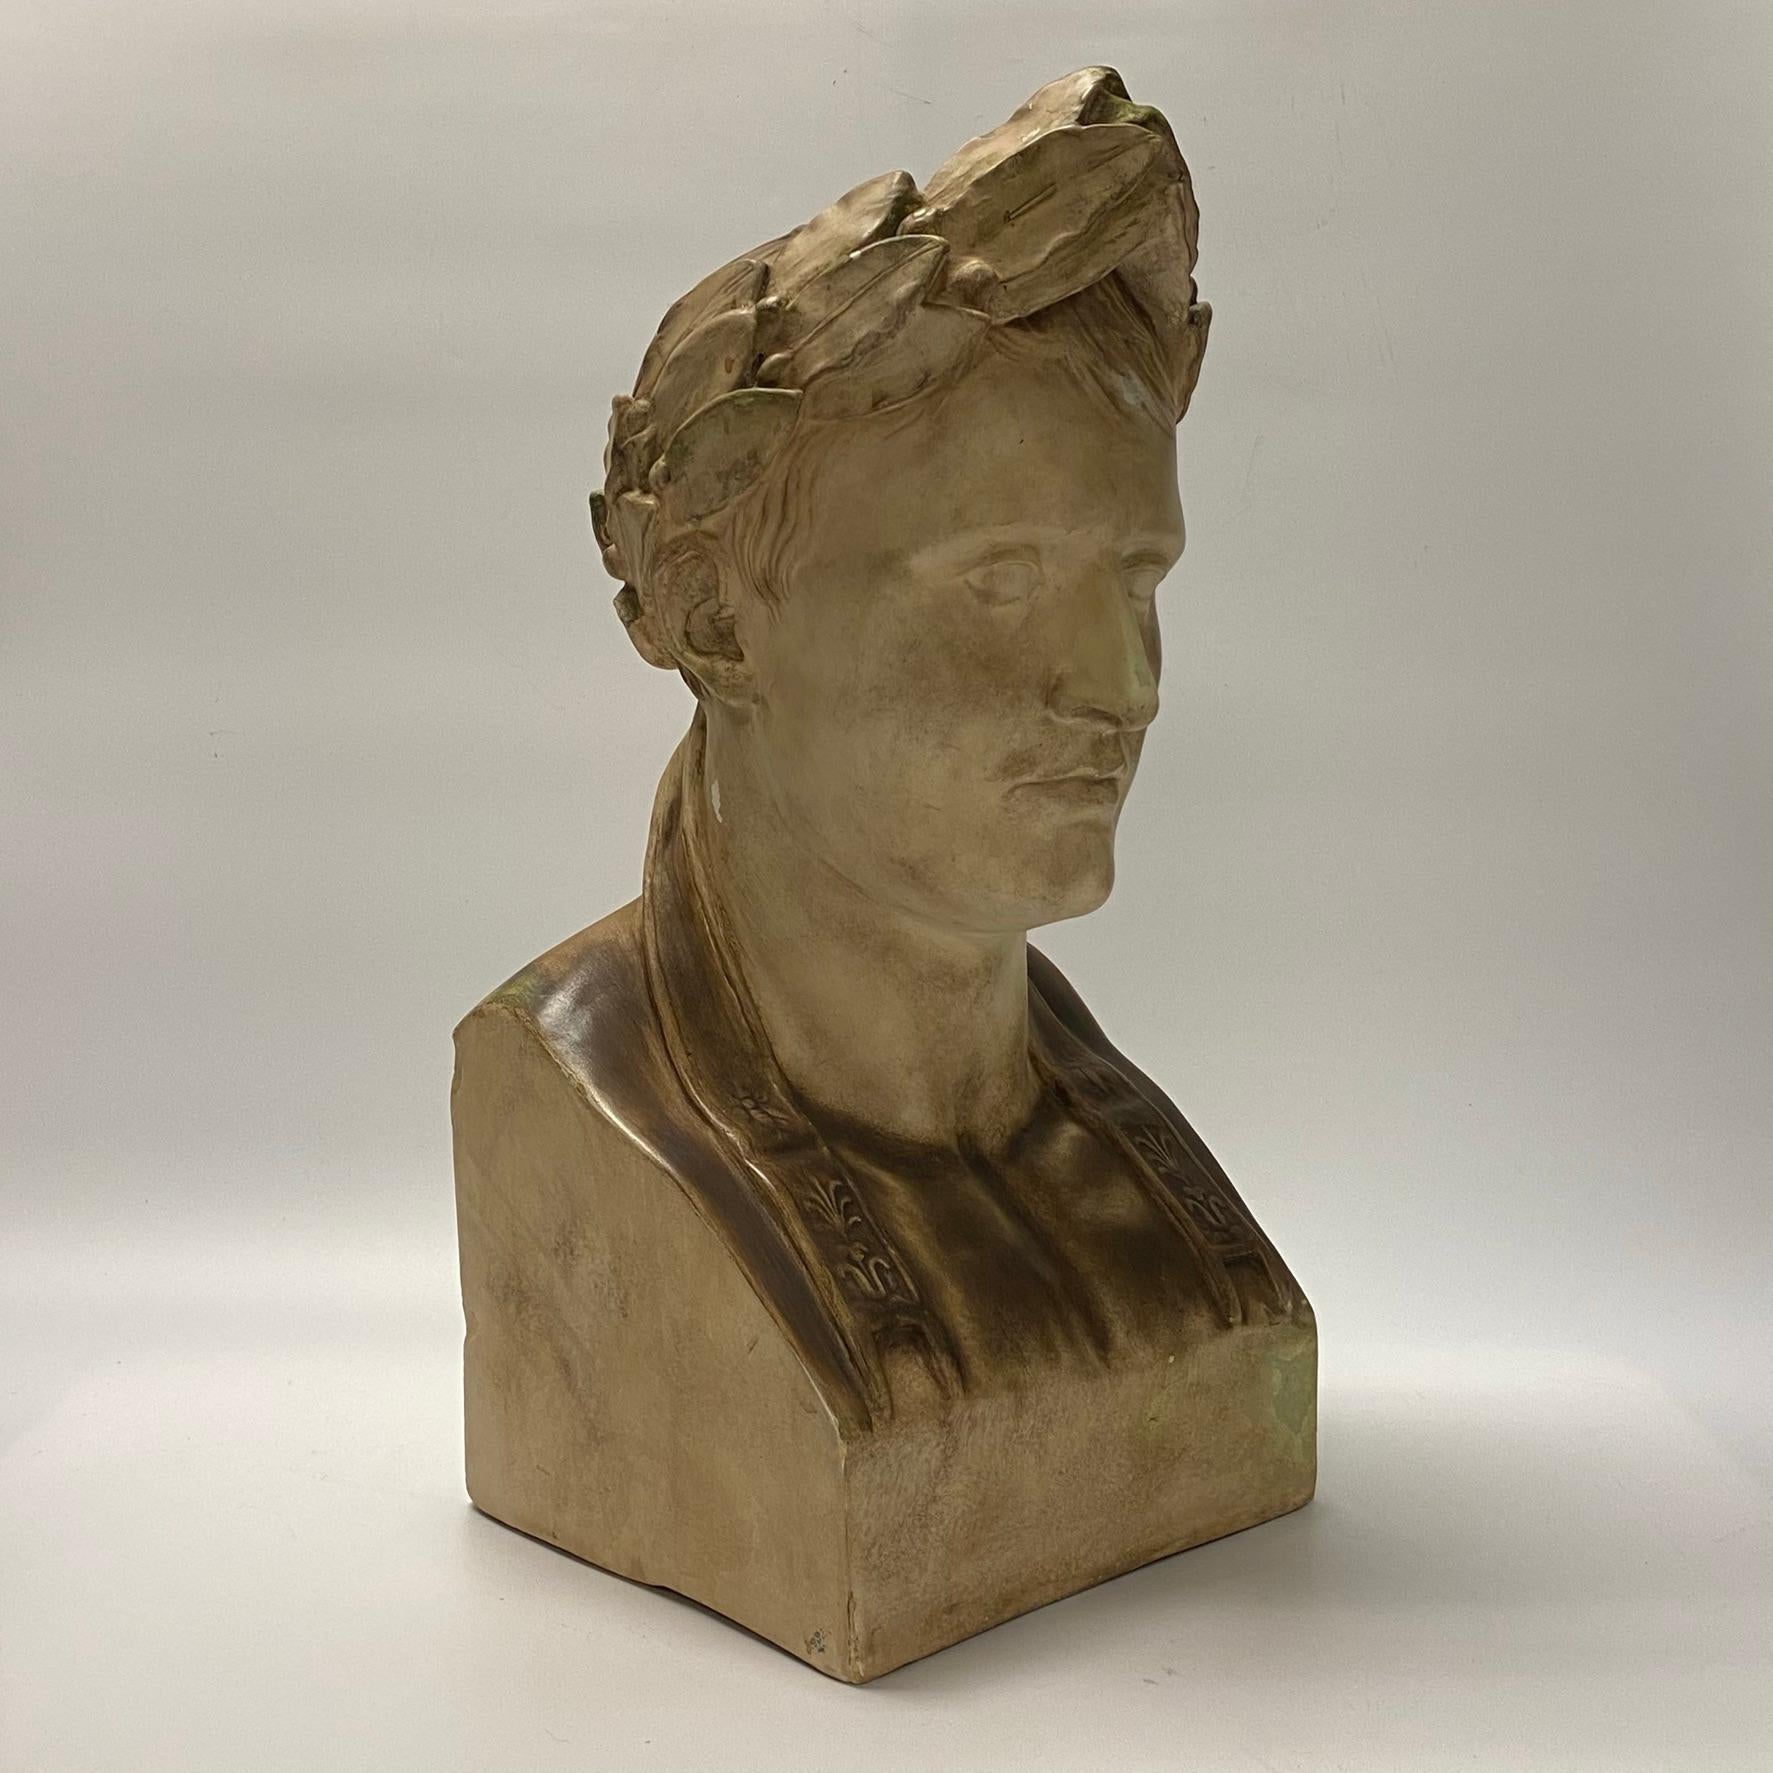 Grand buste en plâtre de Napoléon.
Taché.